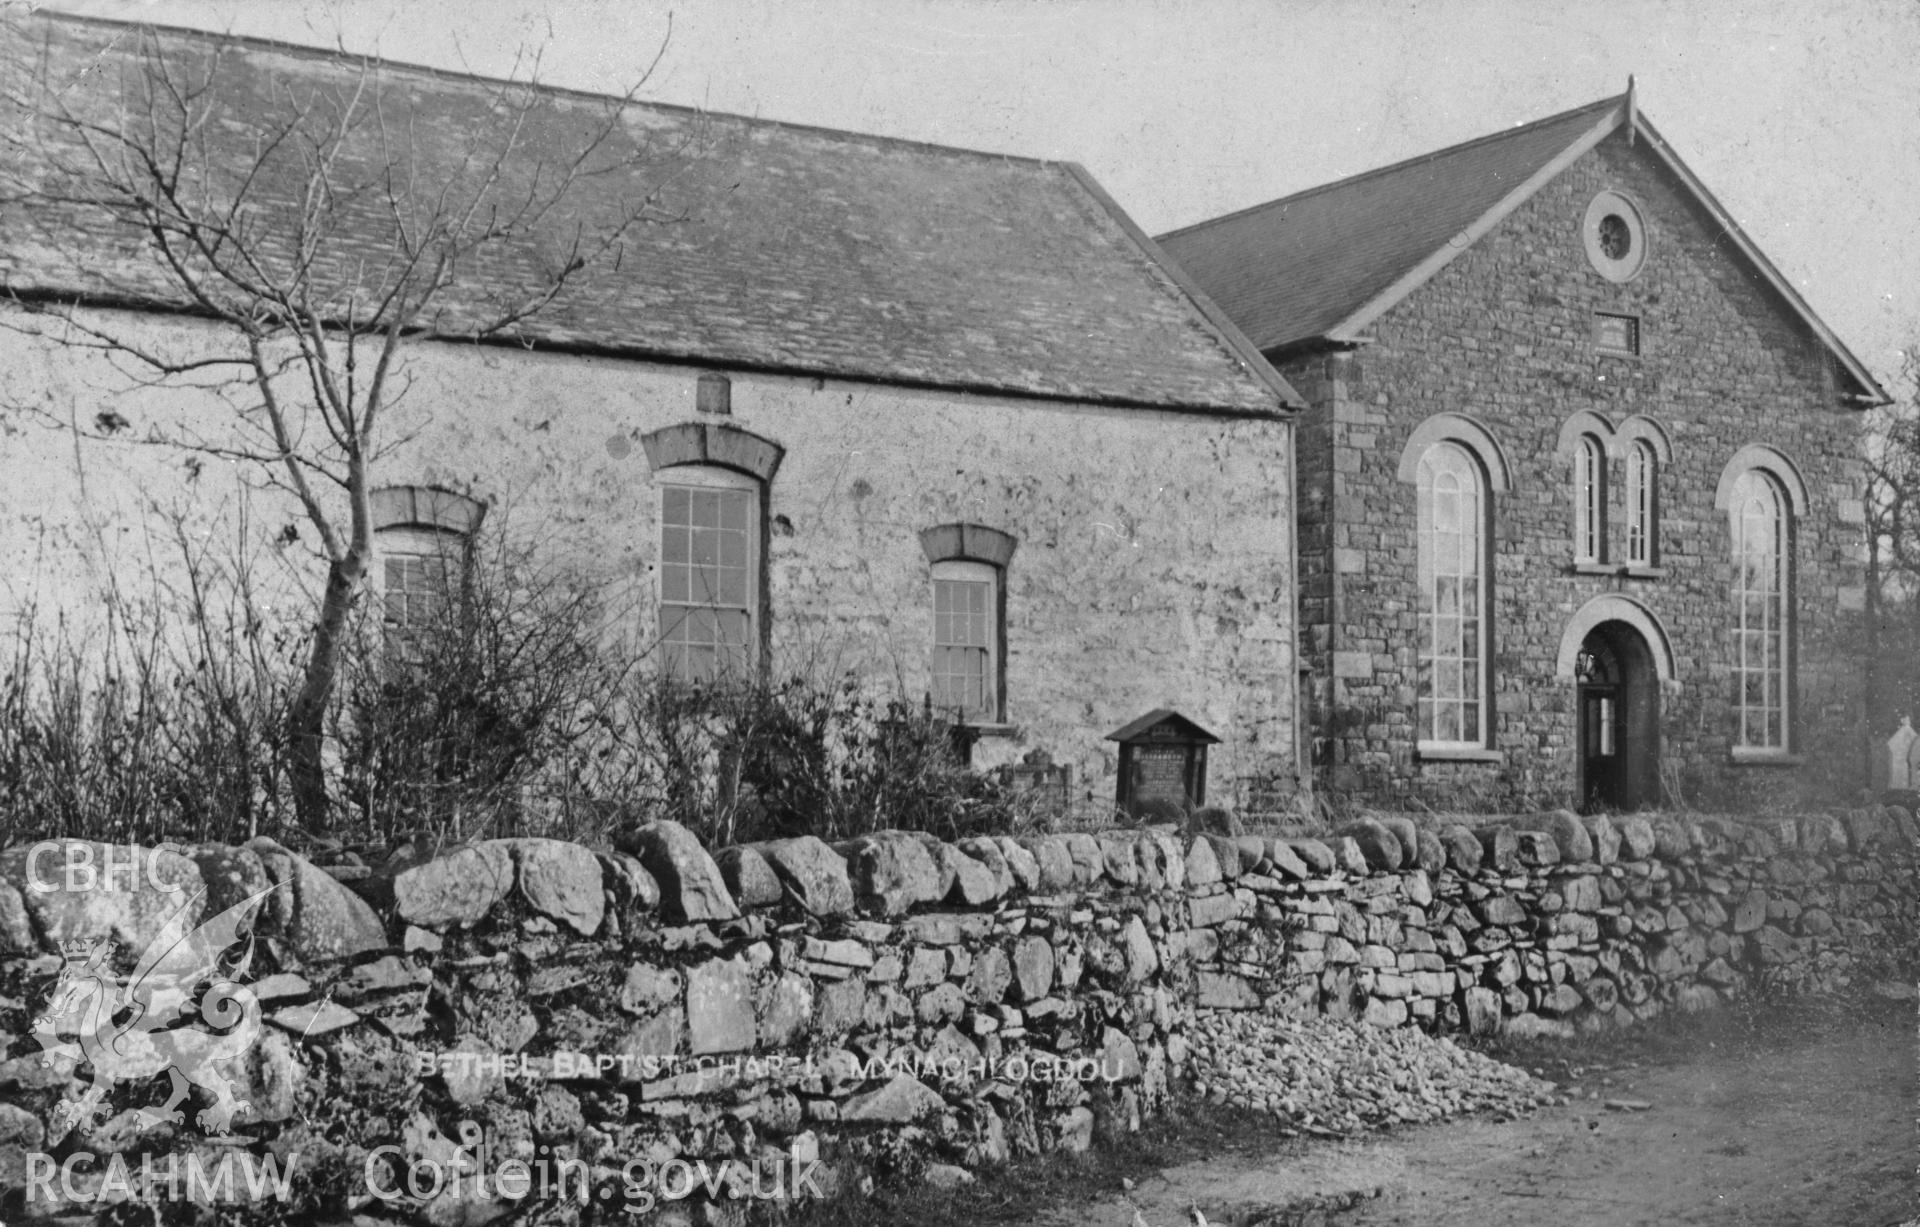 Bethel Baptist Chapel, Mynachlogddu;  B&W print copied from an undated postcard loaned for copying by Thomas Lloyd.  Copy negative held.